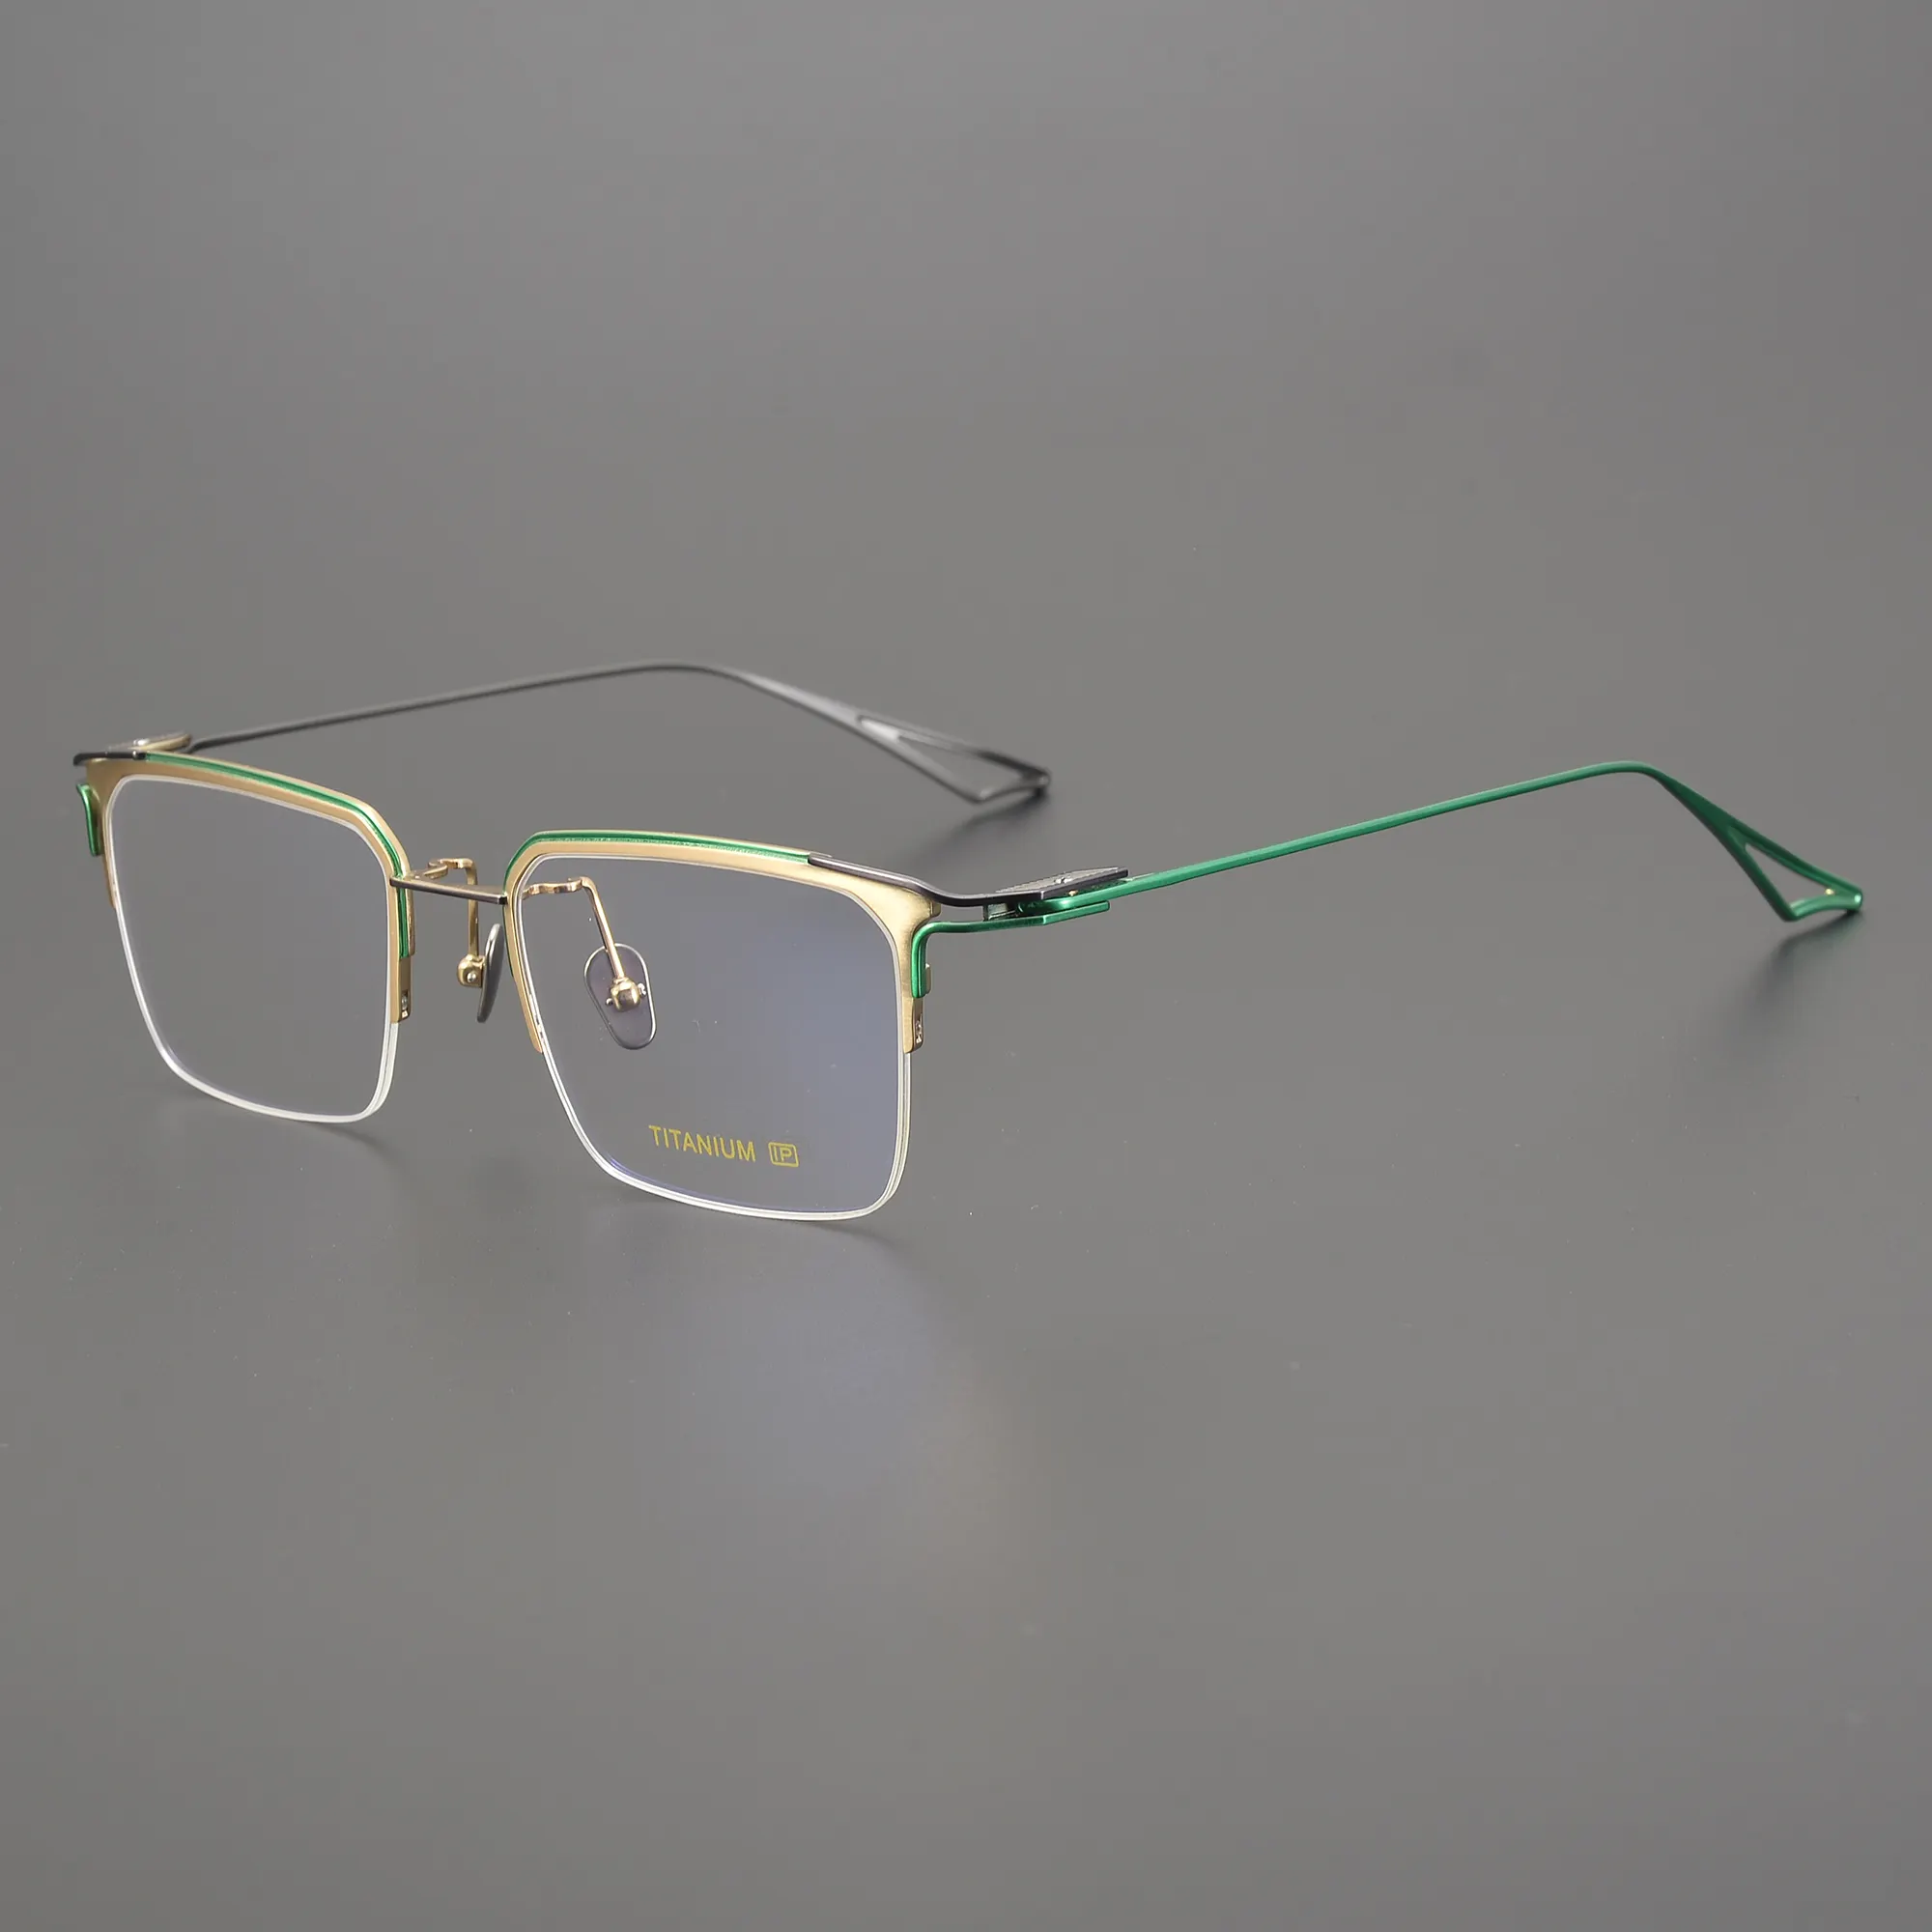 Luxus Herren Business Hal brand ultraleichte Brille aus reinem Titan Rahmen Retro Hal brand Myopie Brillen fassungen